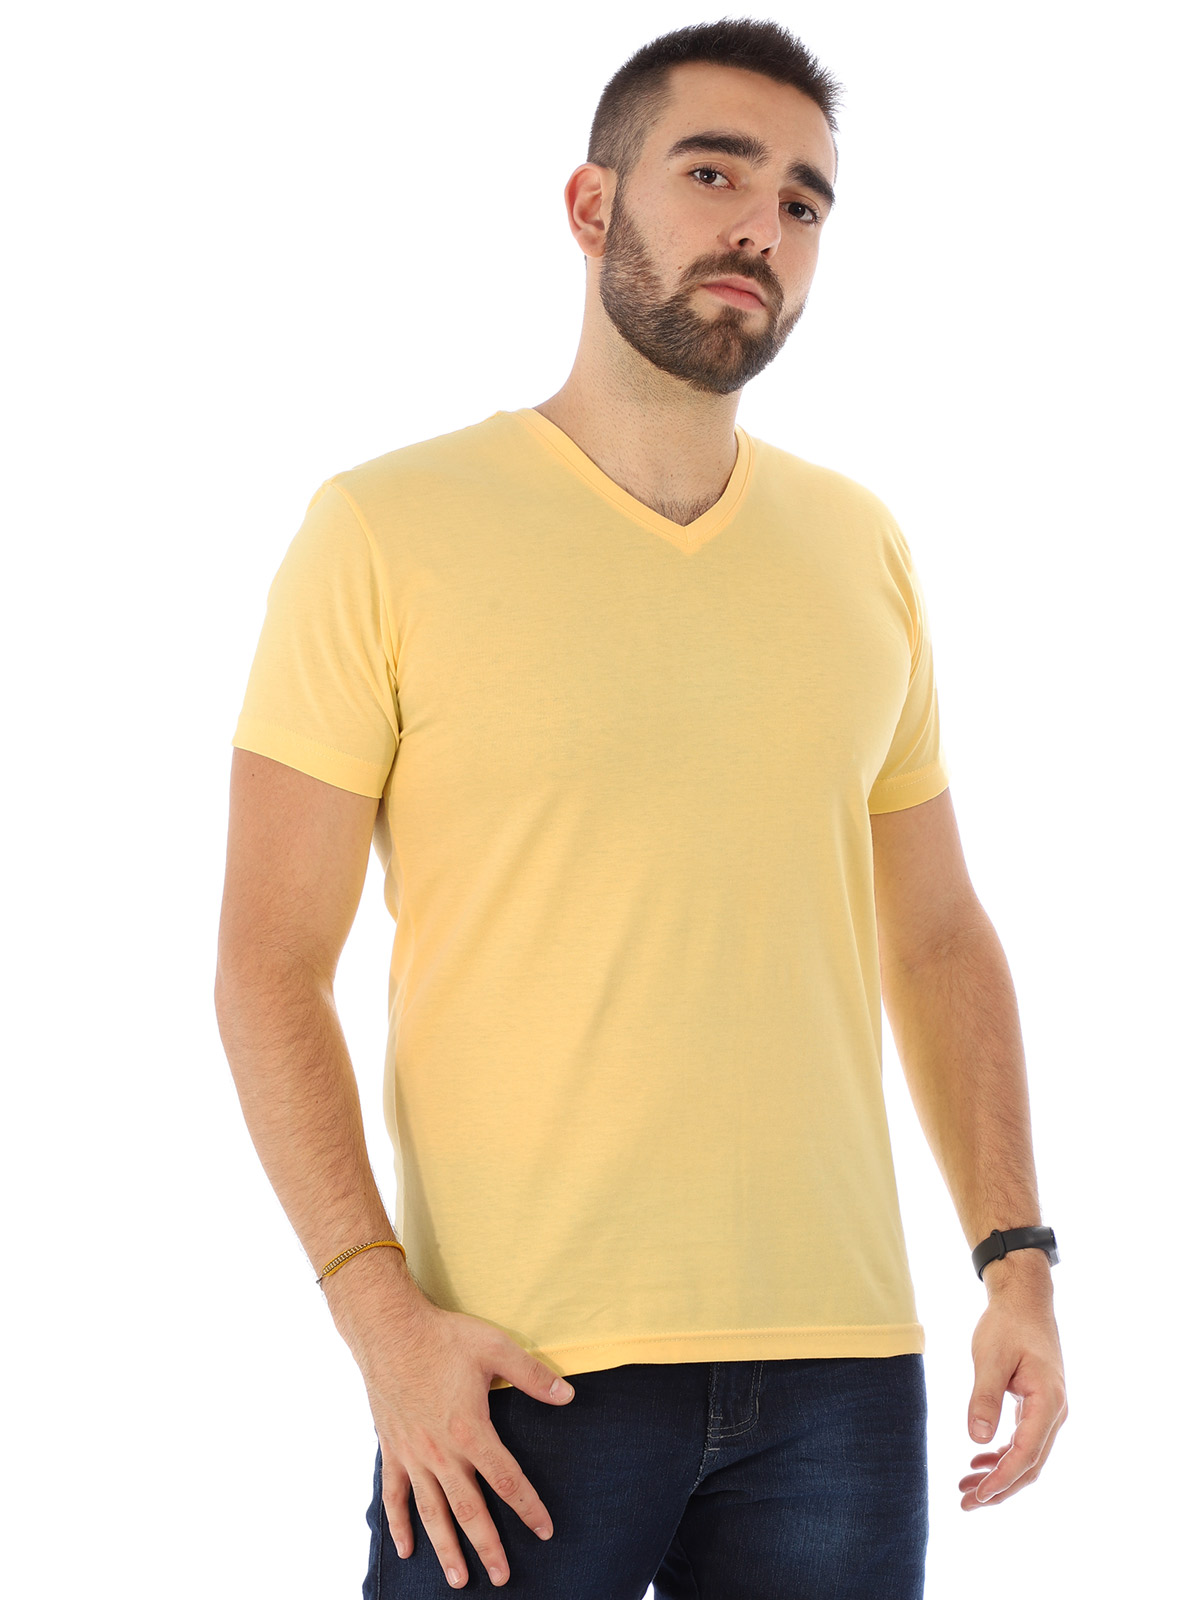 Camiseta Masculina Decote V. Algodão Slim Fit Amarela